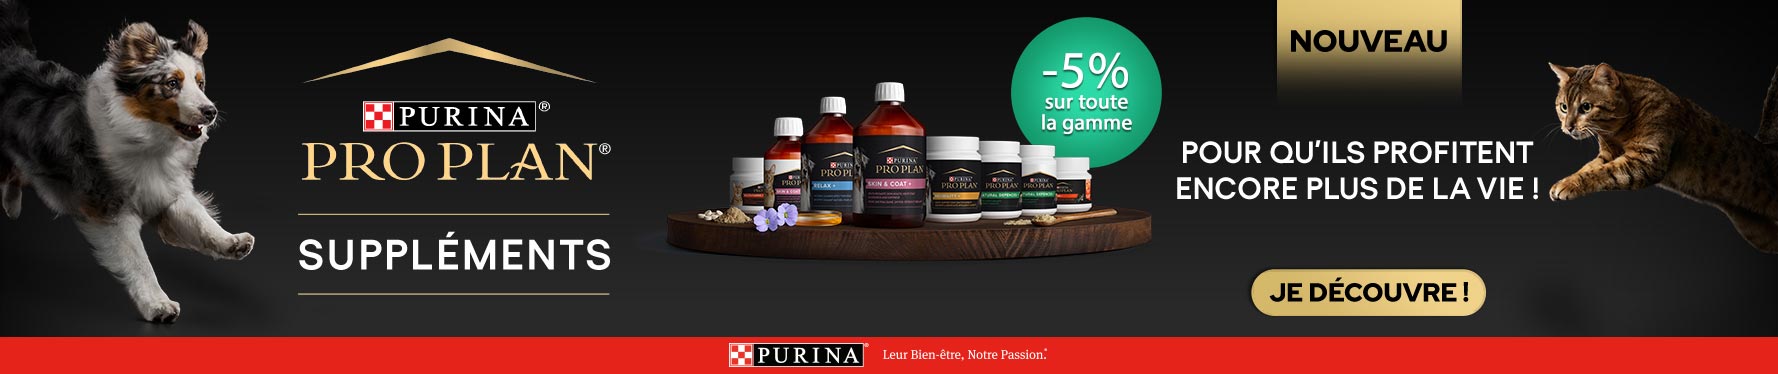 Profitez de notre offre sur les suppléments Purina ProPlan